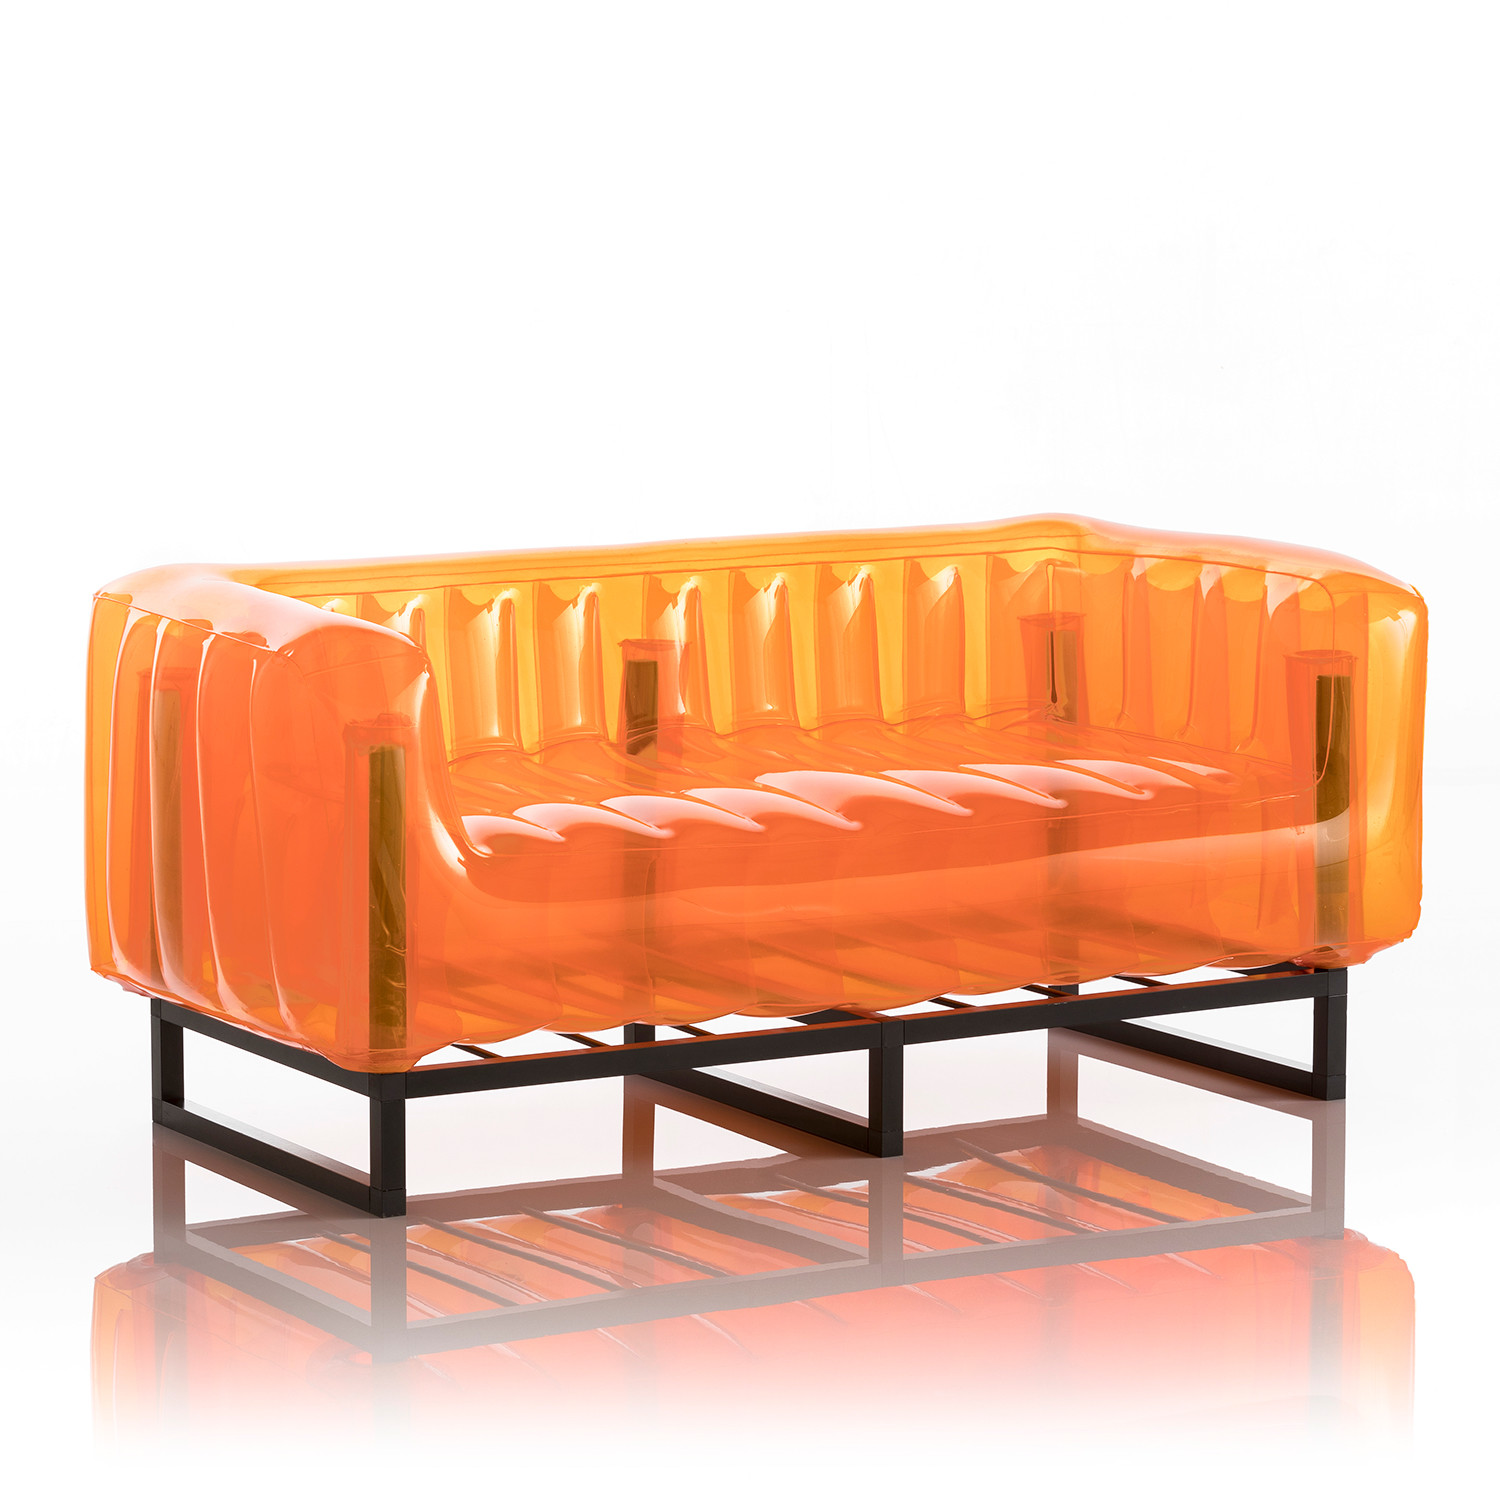 Unique Inflatable Sofa for Simple Design